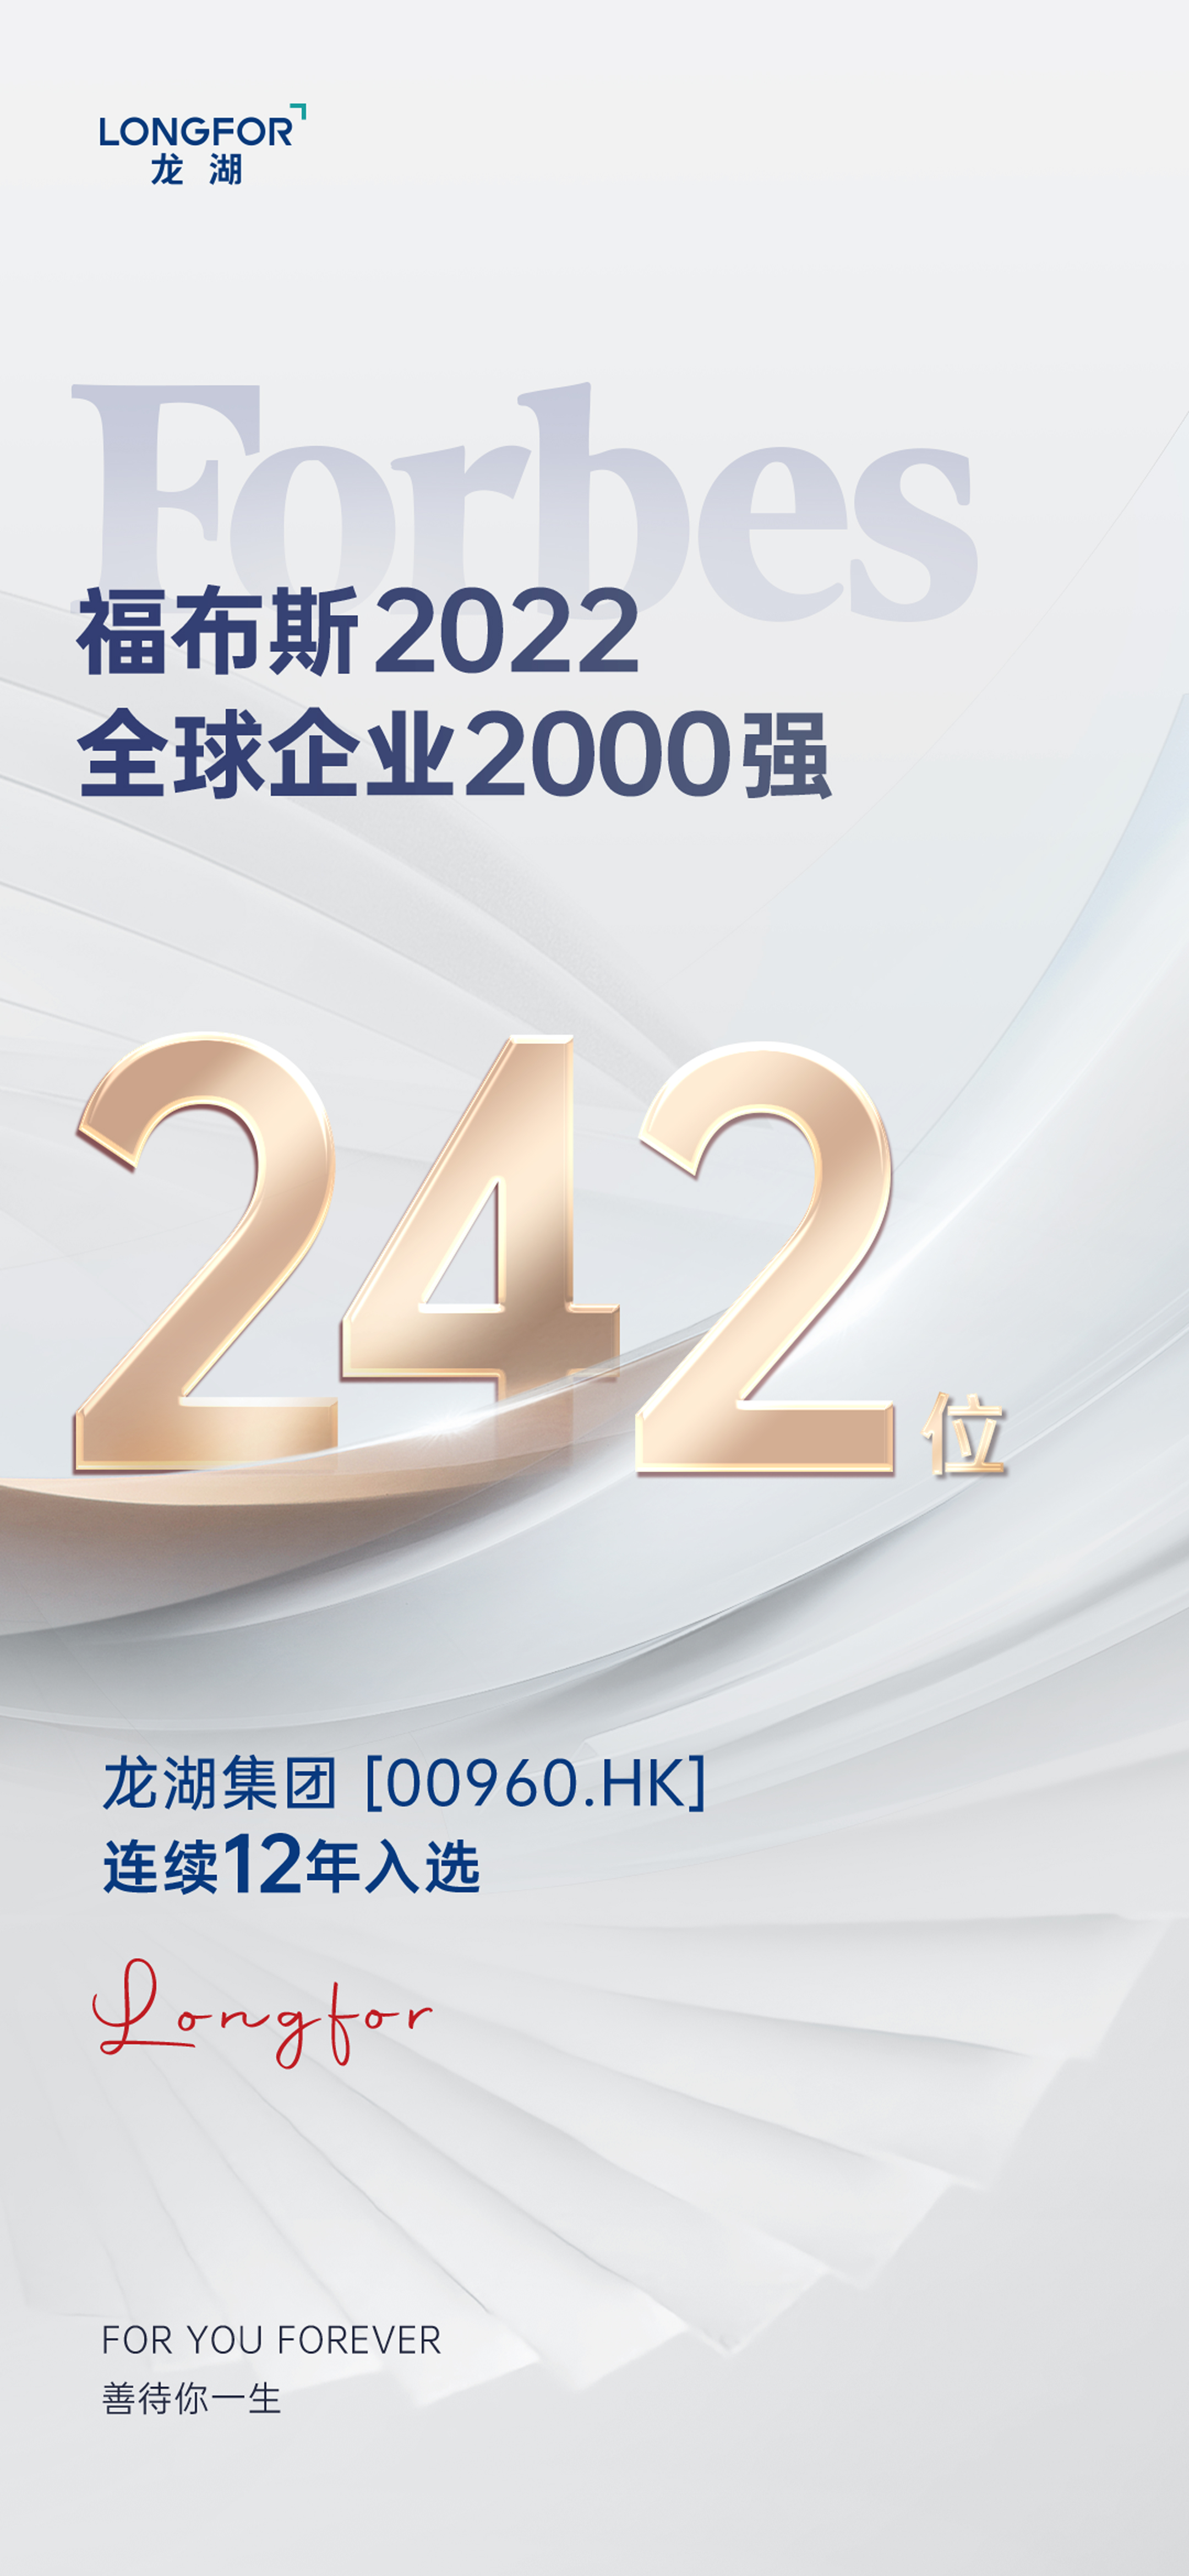 399家中国企业登上福布斯全球企业2000强 龙湖集团连续12年上榜